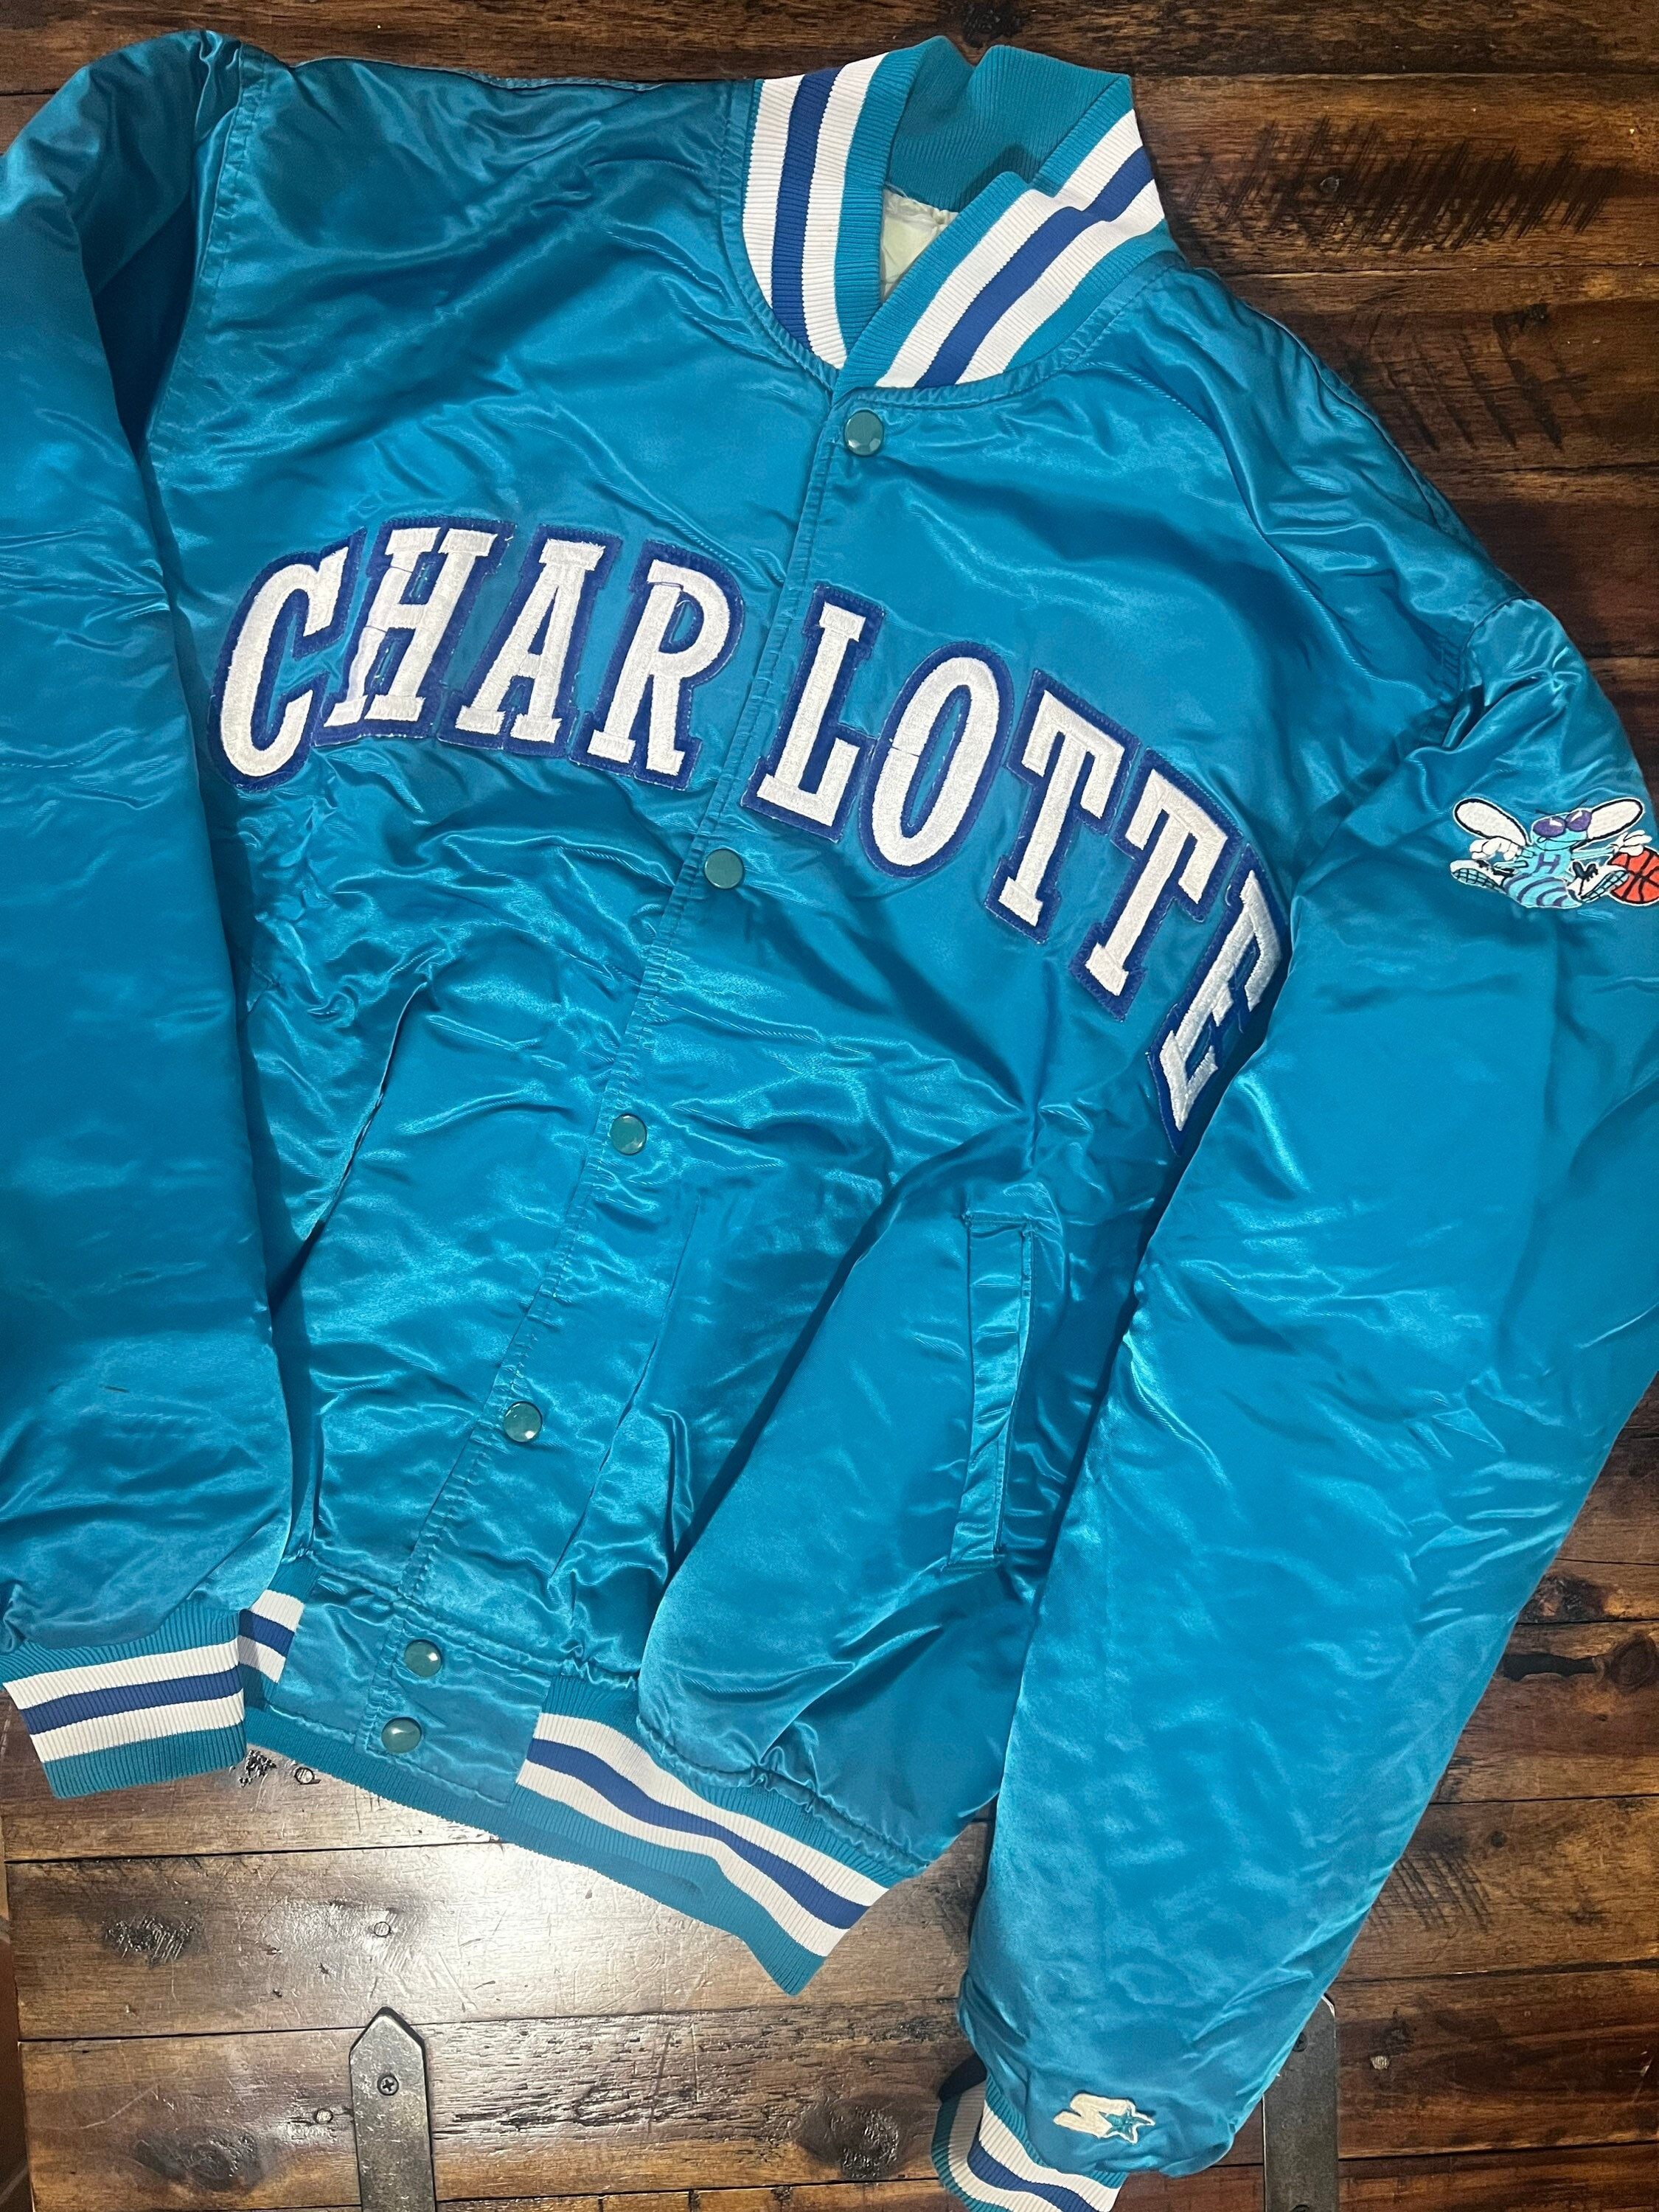 Starter CHARLOTTE HORNETS Jacket Size Large Child Vintage Original 80s